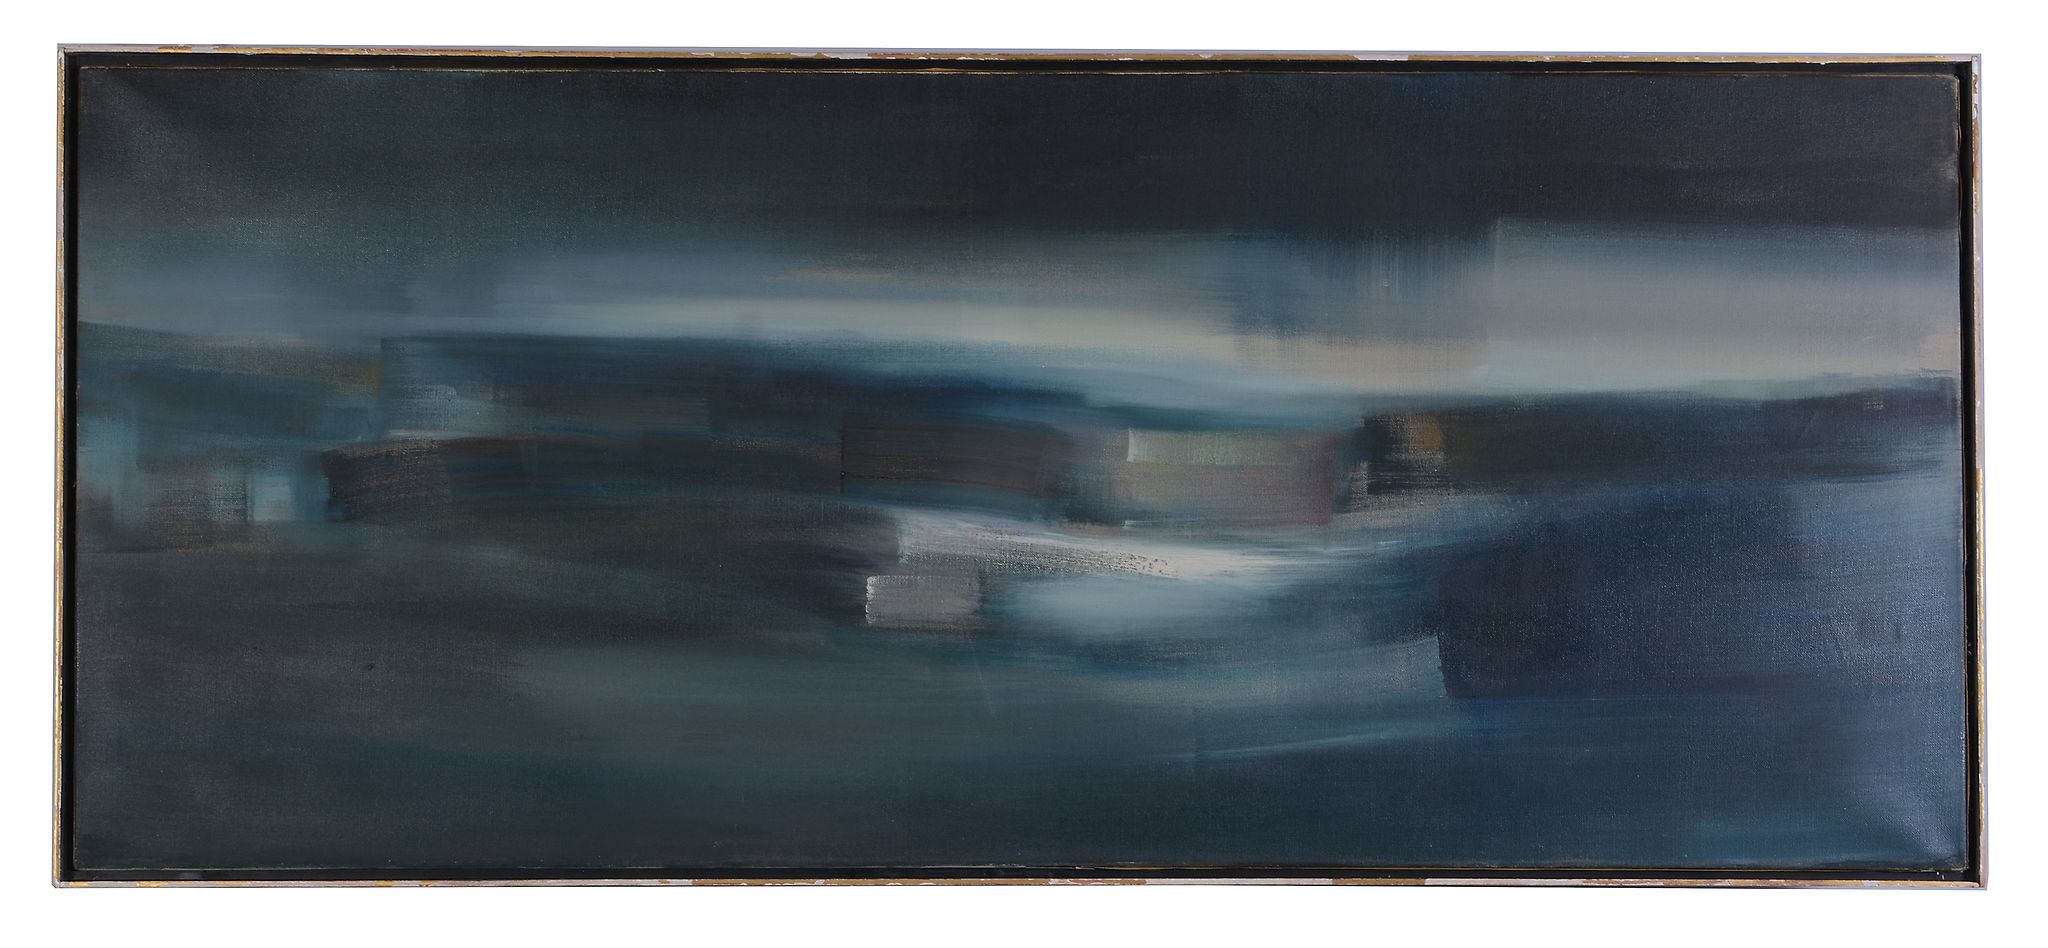 δ Kit Barker (British 1916-1988) - Rain over the valley Oil on canvas Signed, titled and dated 60 - Image 2 of 2